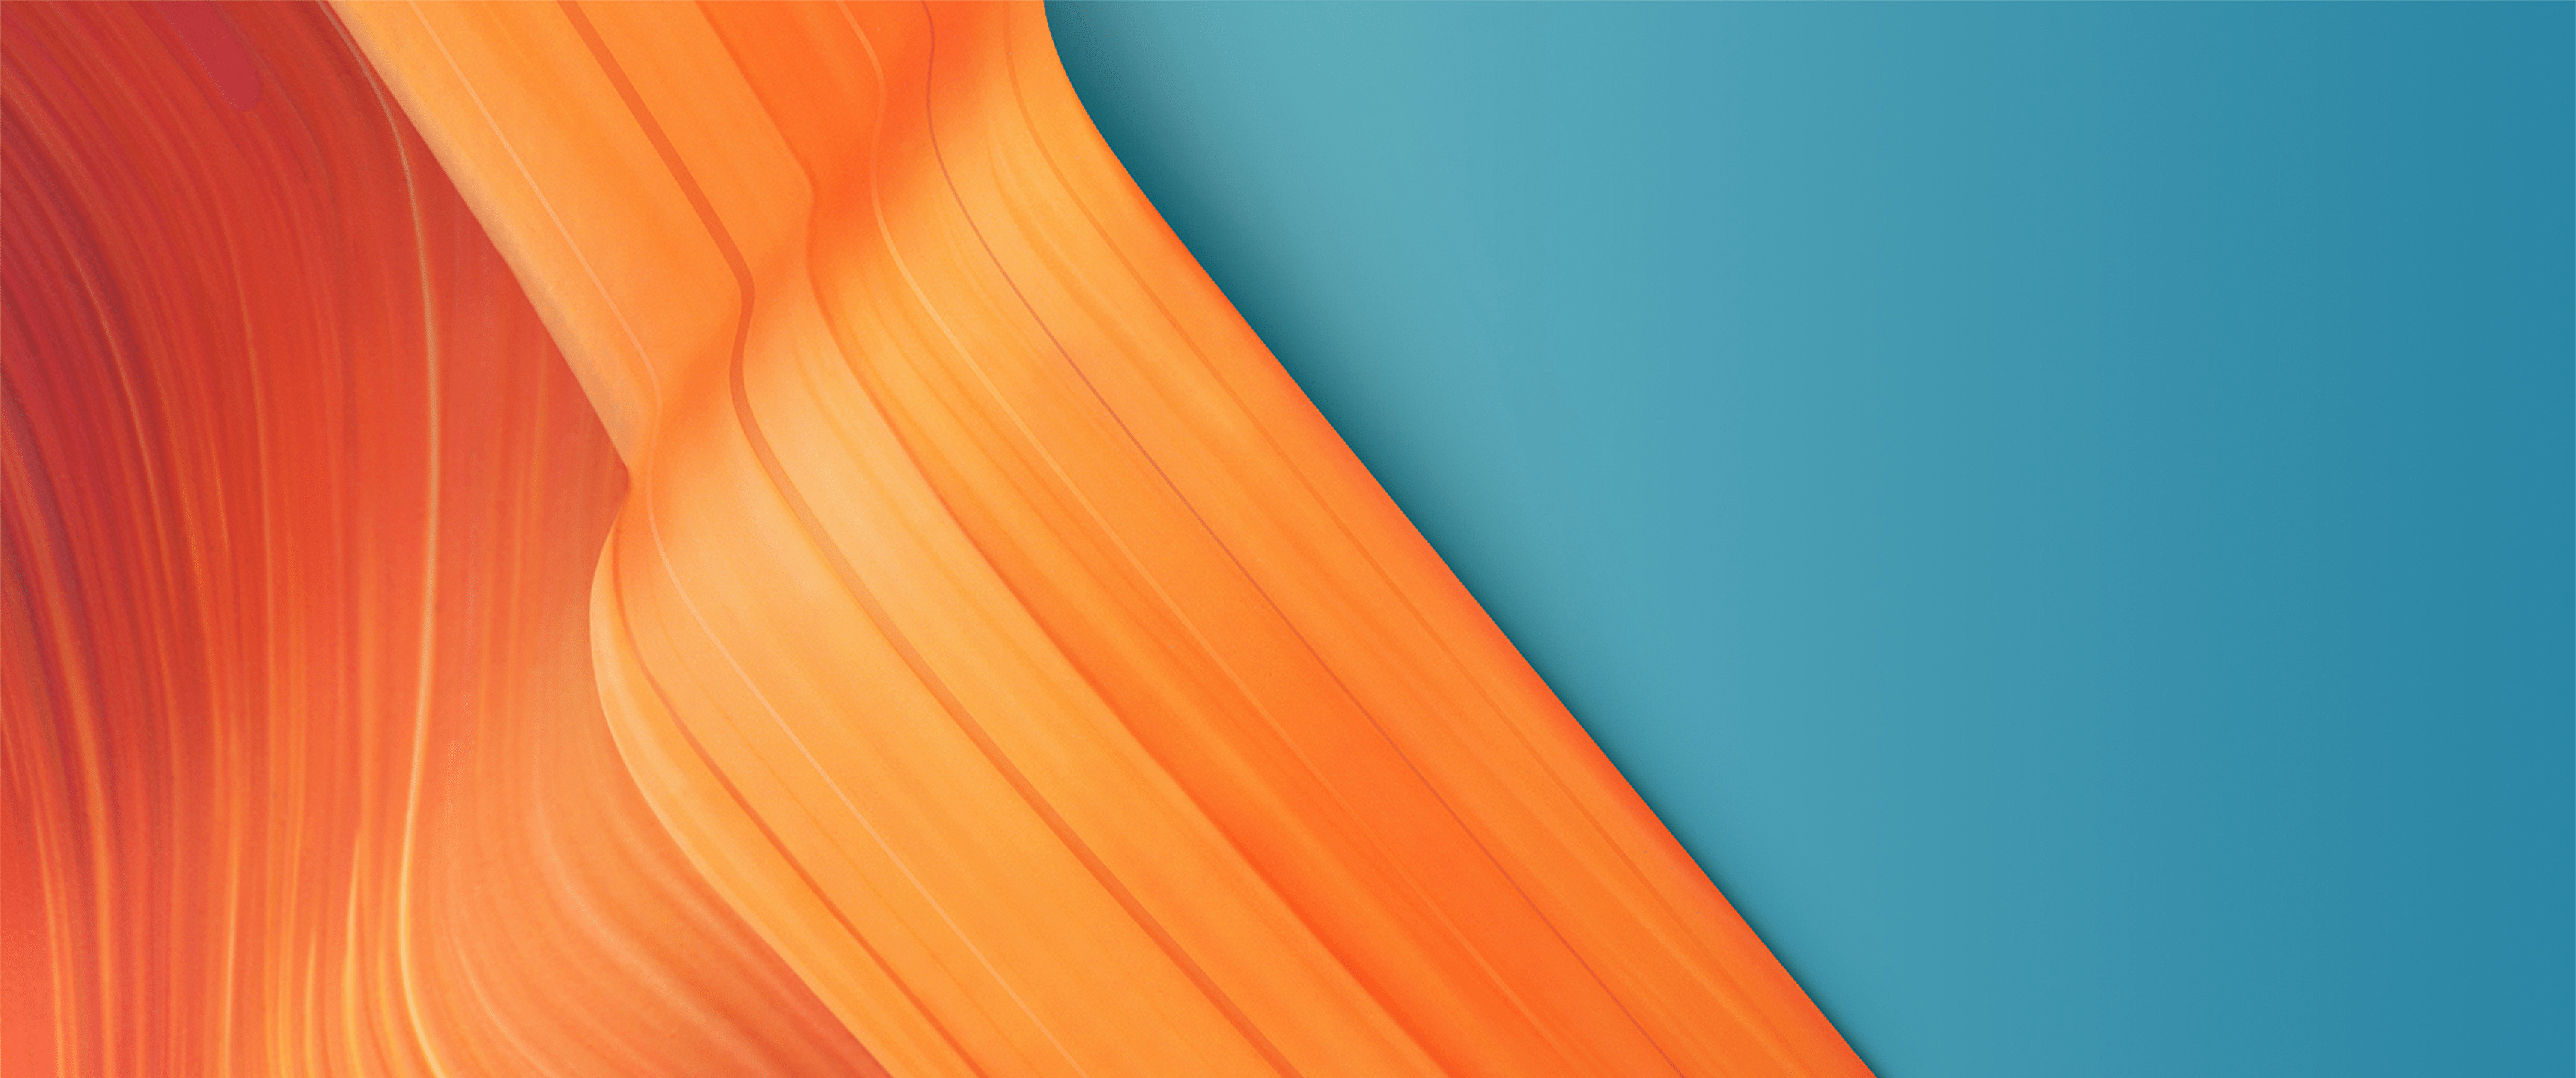 Orange Lines Ultrawide Wallpaper Wallpaper Ultrawide